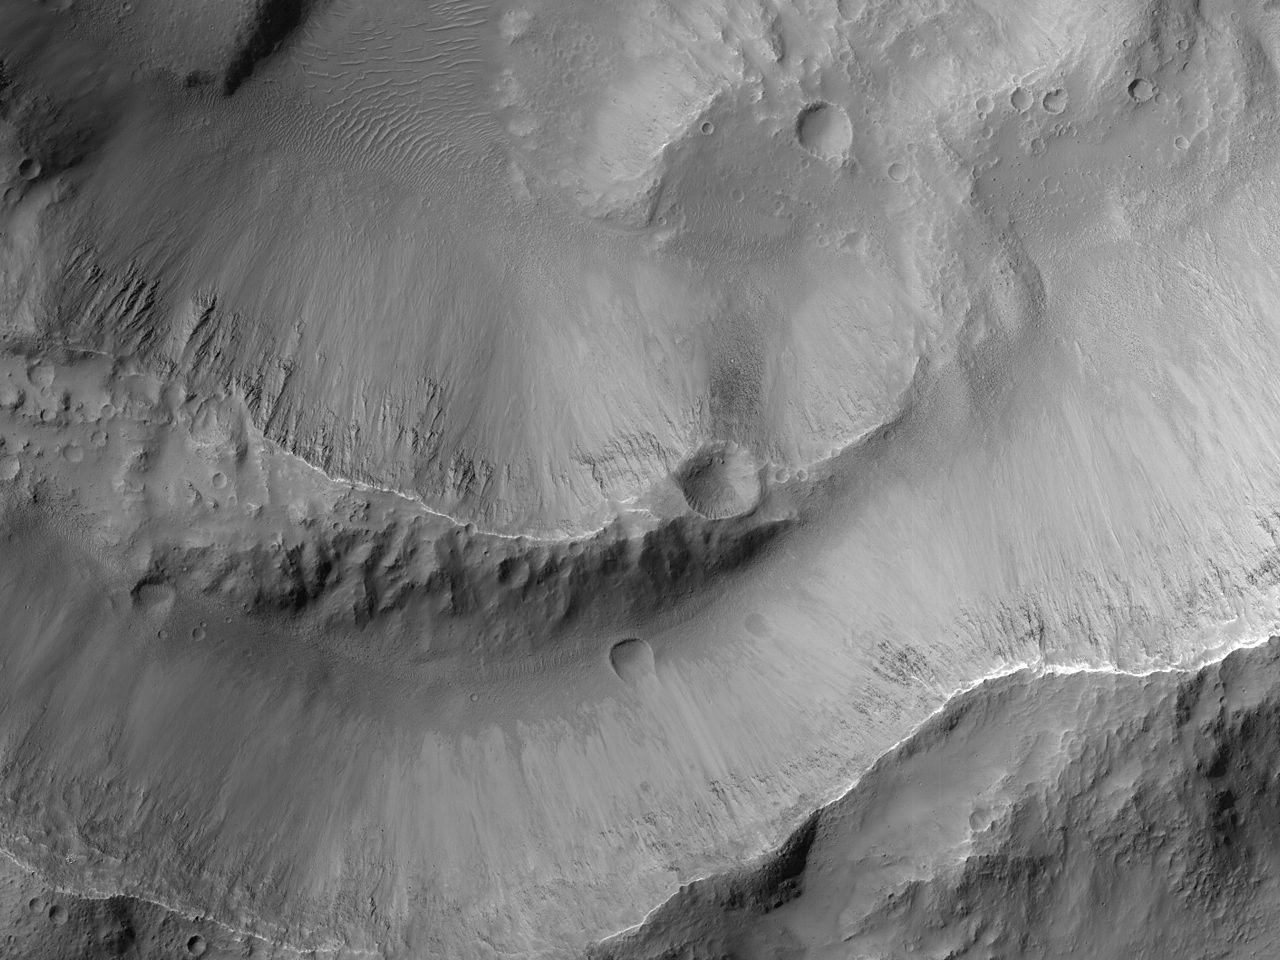 Ana kayacı ortaya çıkarmış çarpma krateri